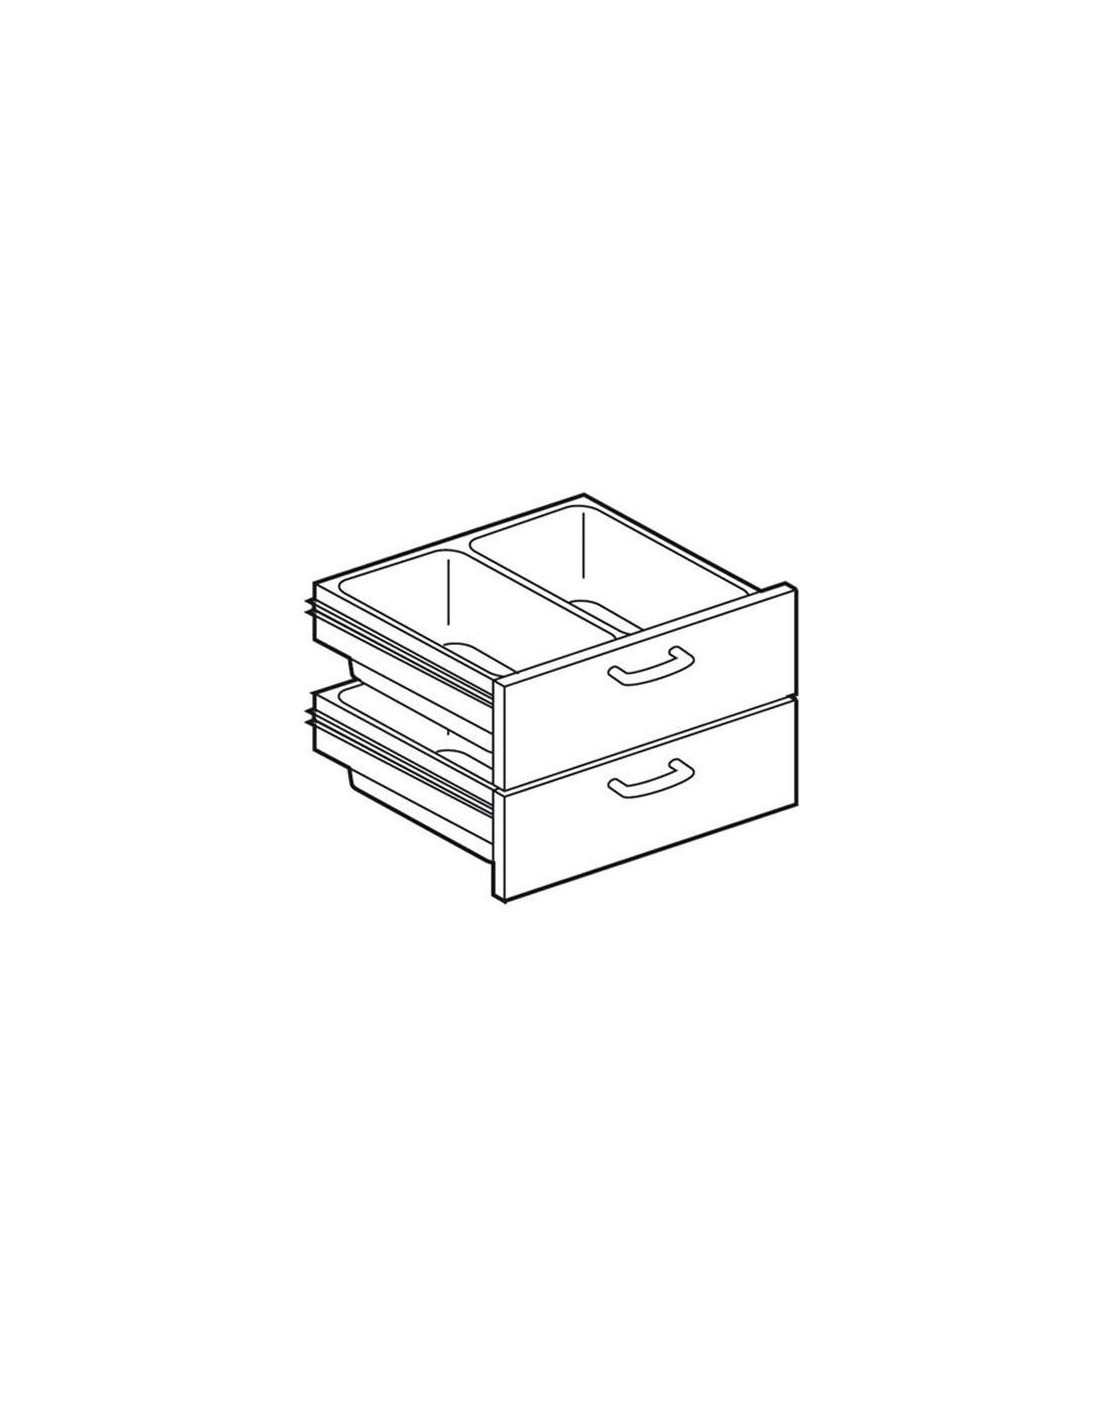 Cassettiera 800 per piani lavoro neutri - 2 cassetti e n. 4 bacinelle in plastica GN 1/1 H15 - cm 79,5 x 59 x 47,5H